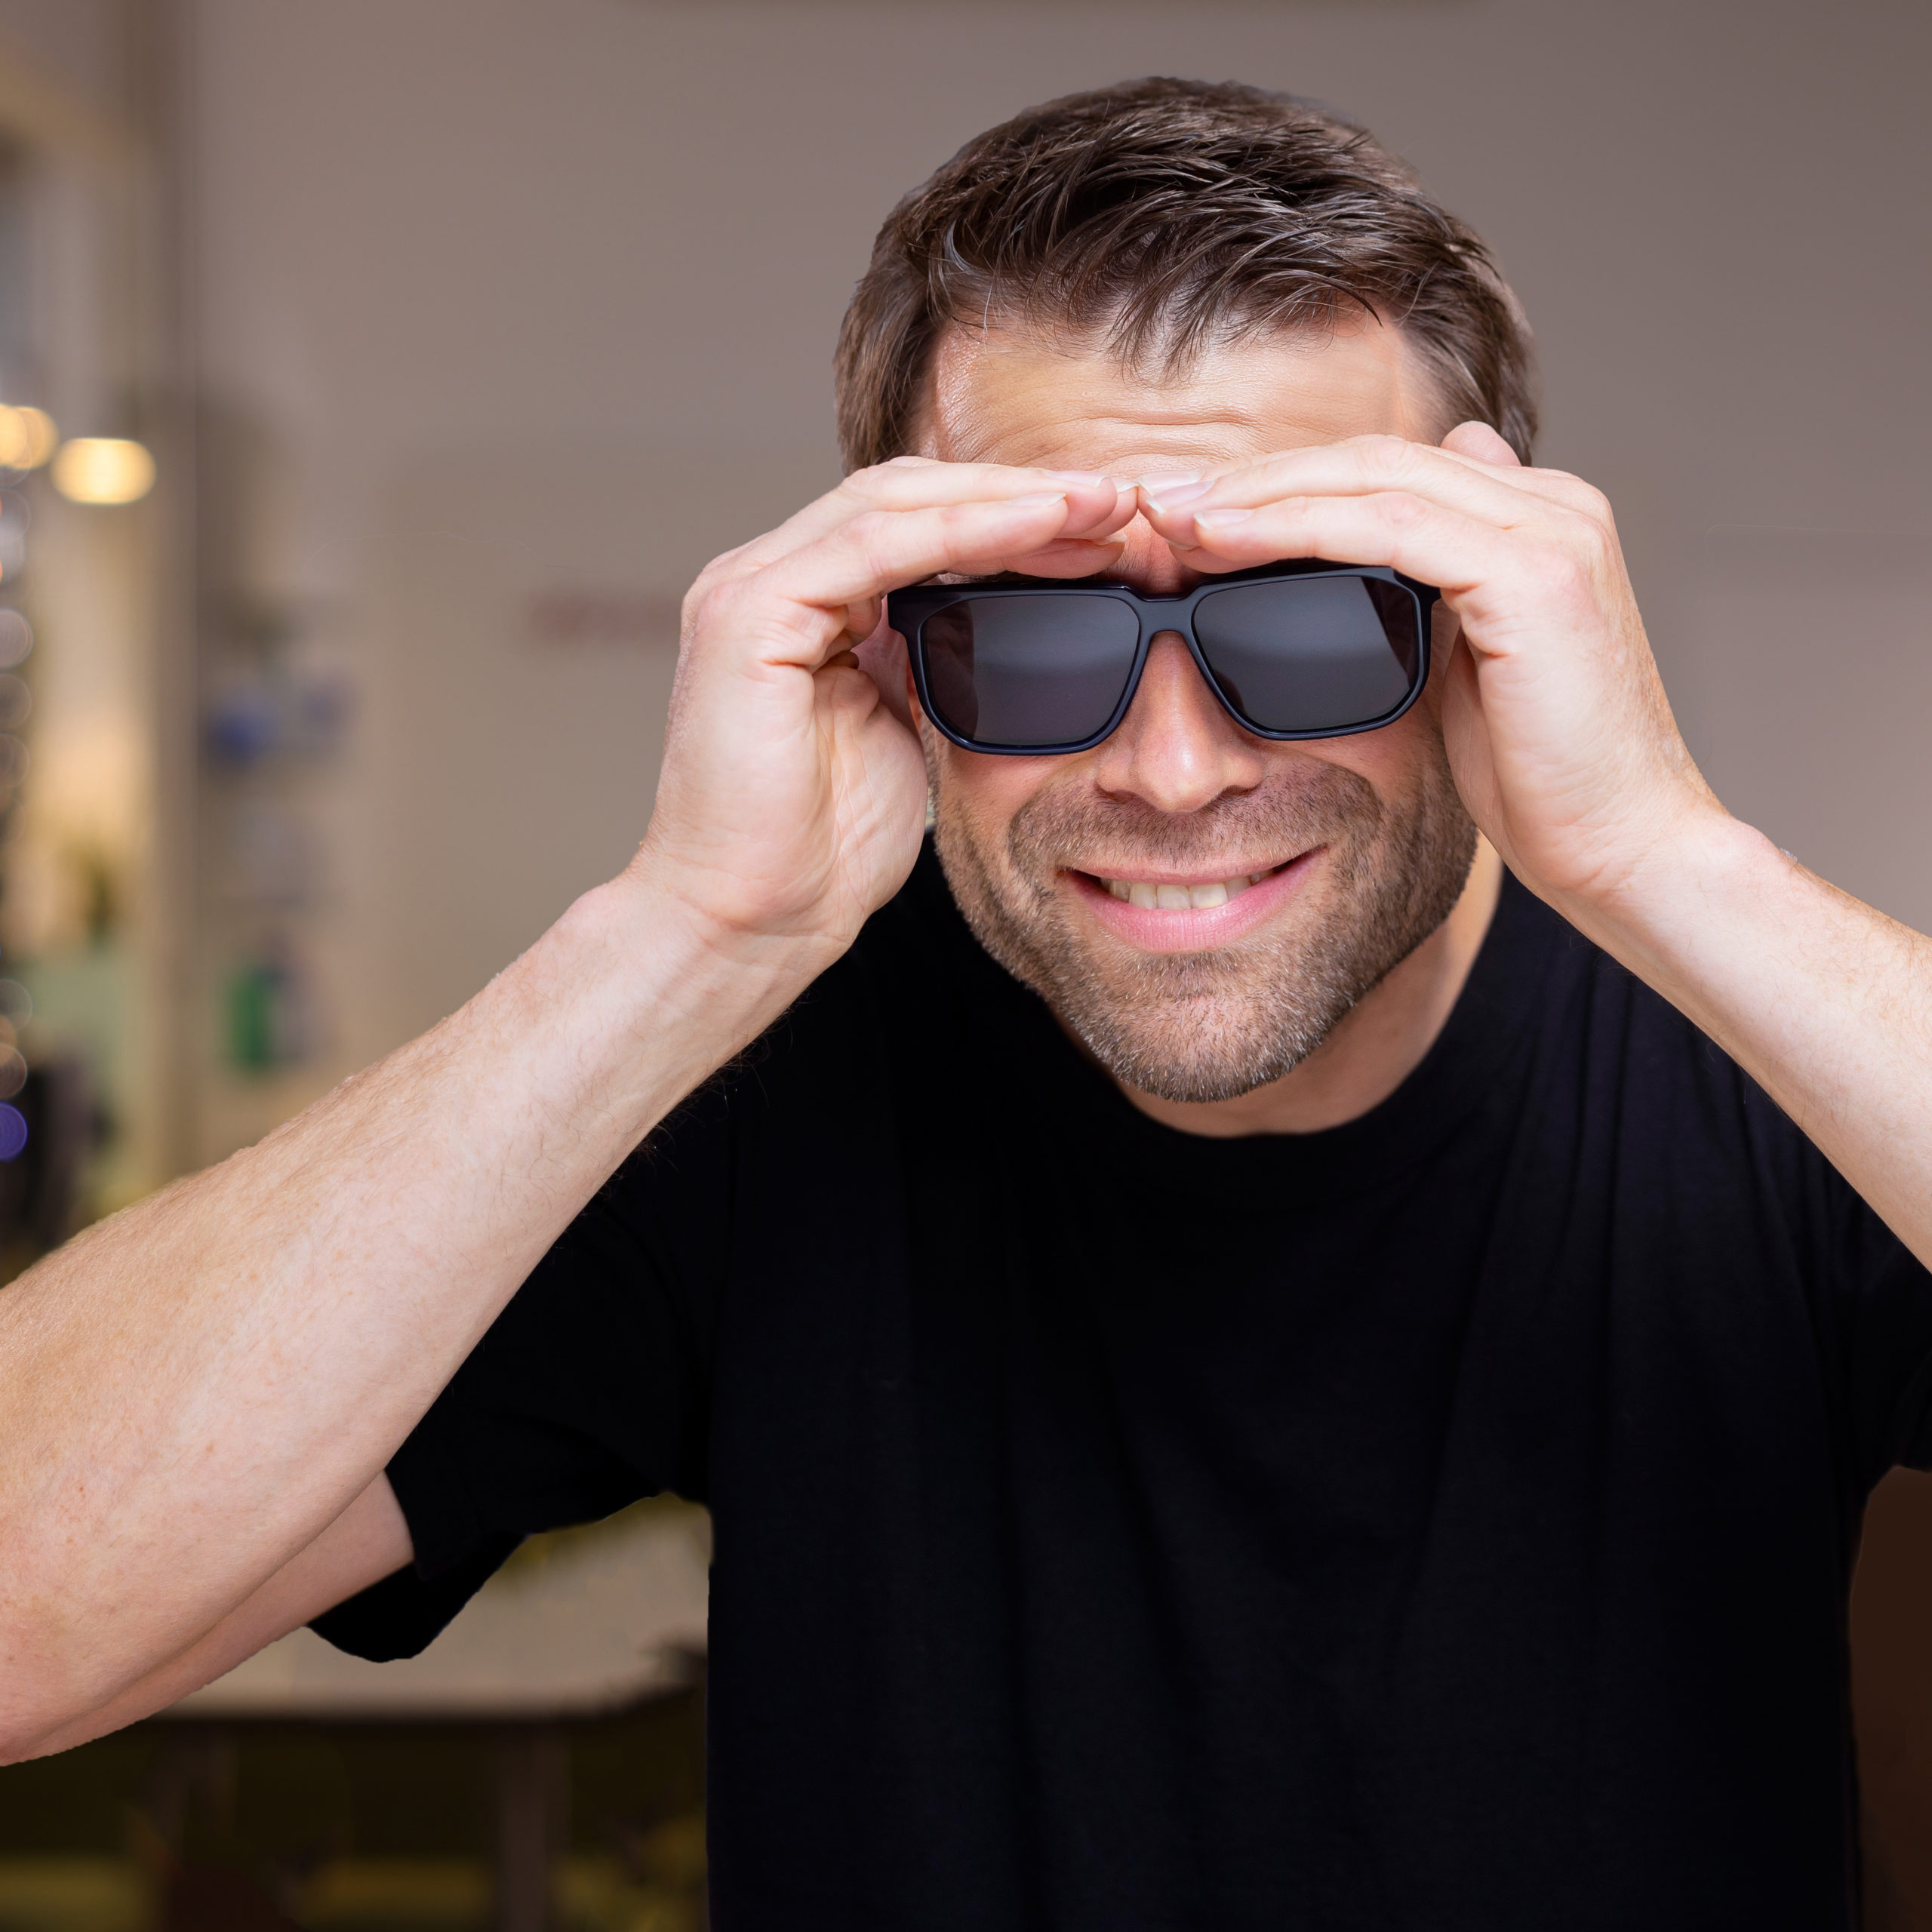 ZEISS BlueGuard Gläser ermöglichen komfortables Sehen und gutes Aussehen ohne störende blau-violette Reflexe.